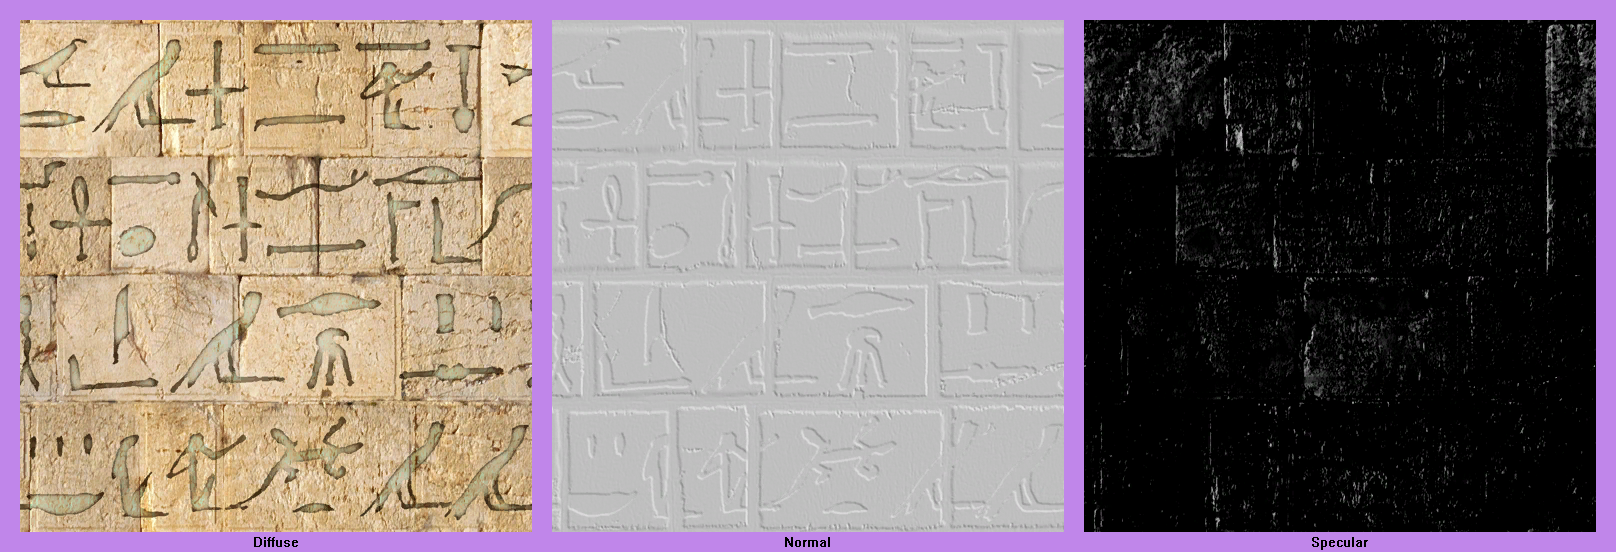 LittleBigPlanet - Egyptian Hieroglyphs